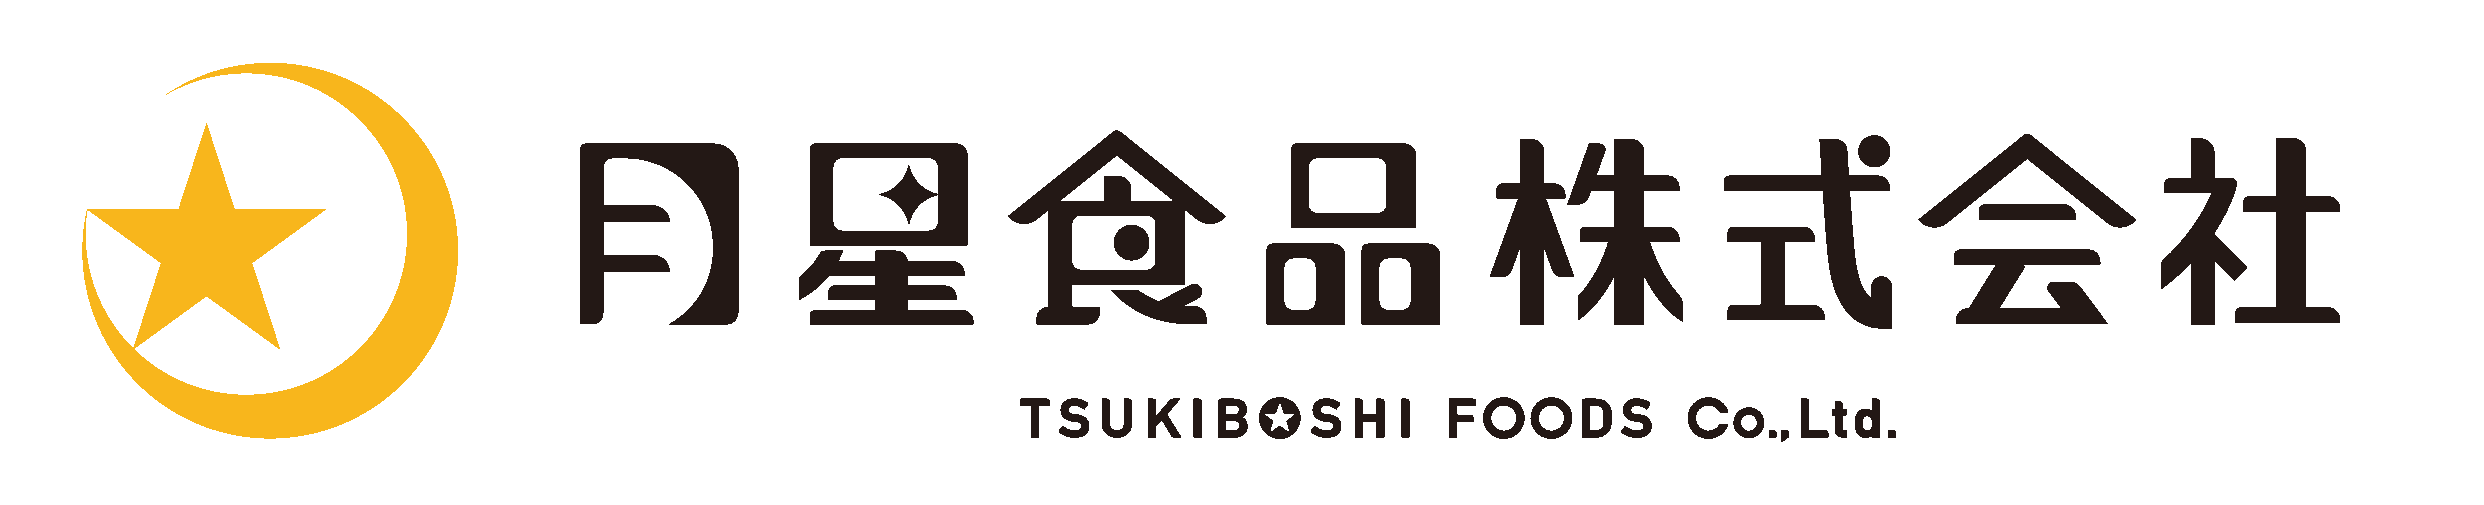 TSUKIBOSHI FOODS